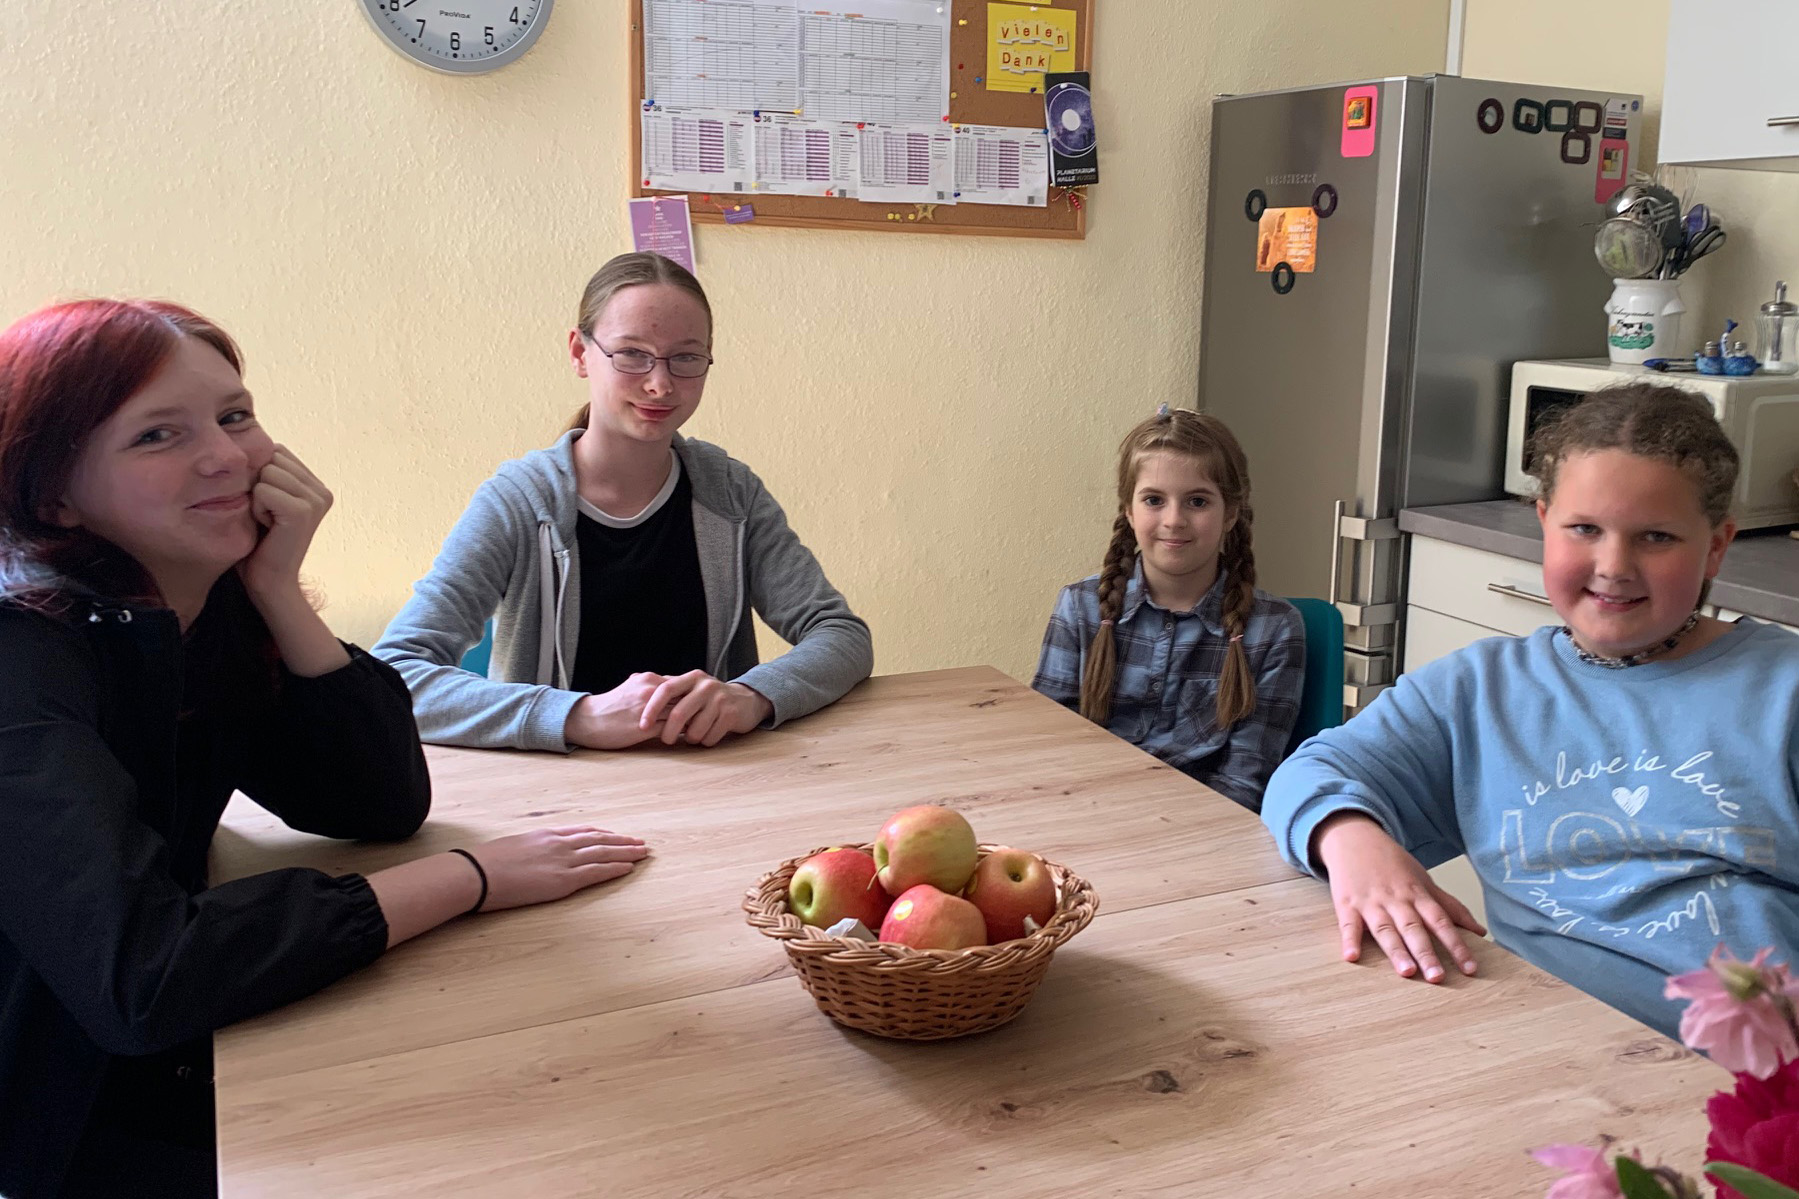 Unsere Küche in der Kinder- und Jugendhilfestation „Über-Mut“ erstrahlt dank der Hans & Ina Lauermann Stiftung in neuem Glanz!